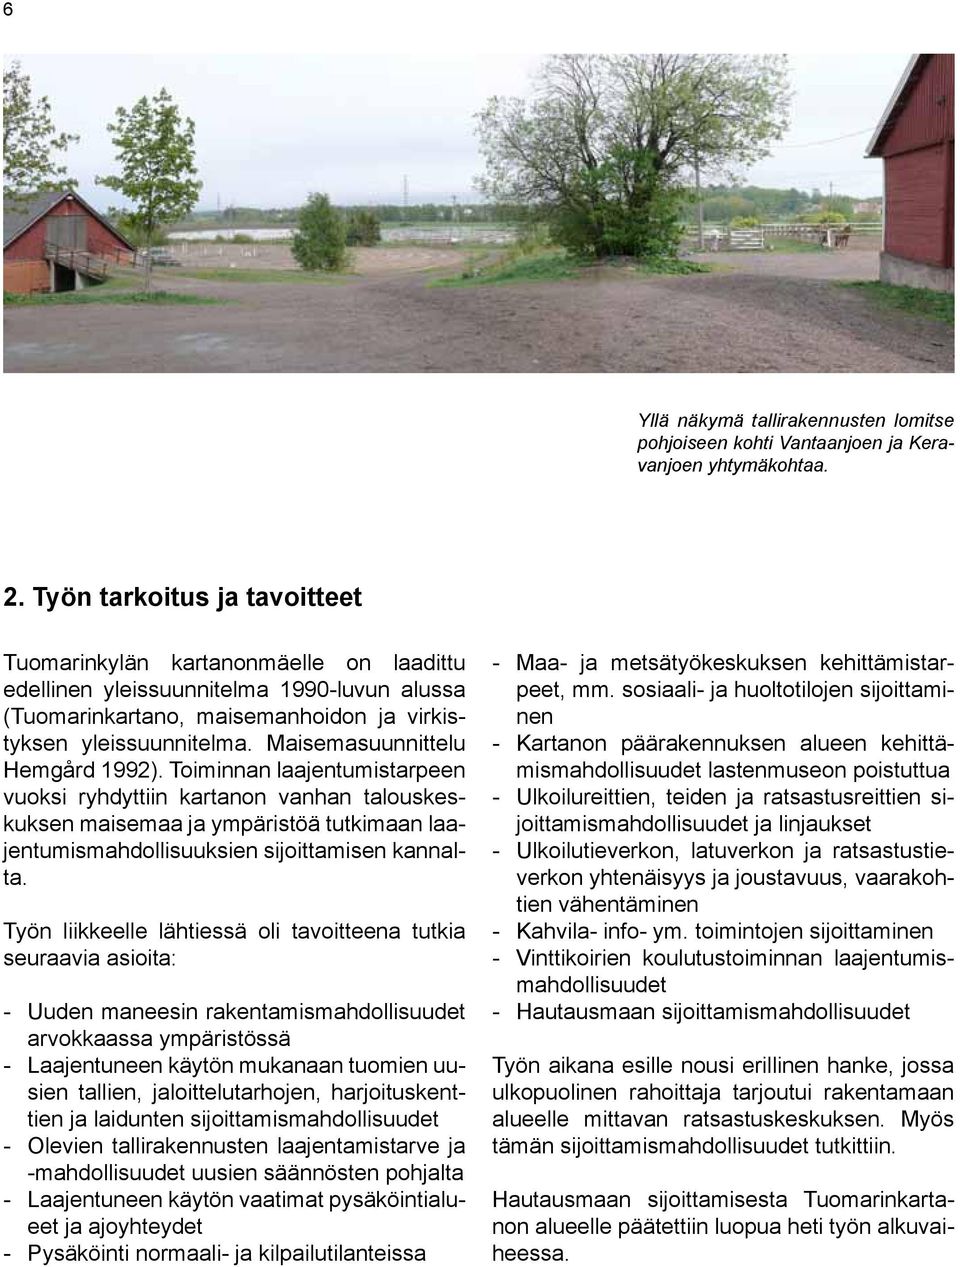 Maisemasuunnittelu Hemgård 1992). Toiminnan laajentumistarpeen vuoksi ryhdyttiin kartanon vanhan talouskeskuksen maisemaa ja ympäristöä tutkimaan laajentumismahdollisuuksien sijoittamisen kannalta.